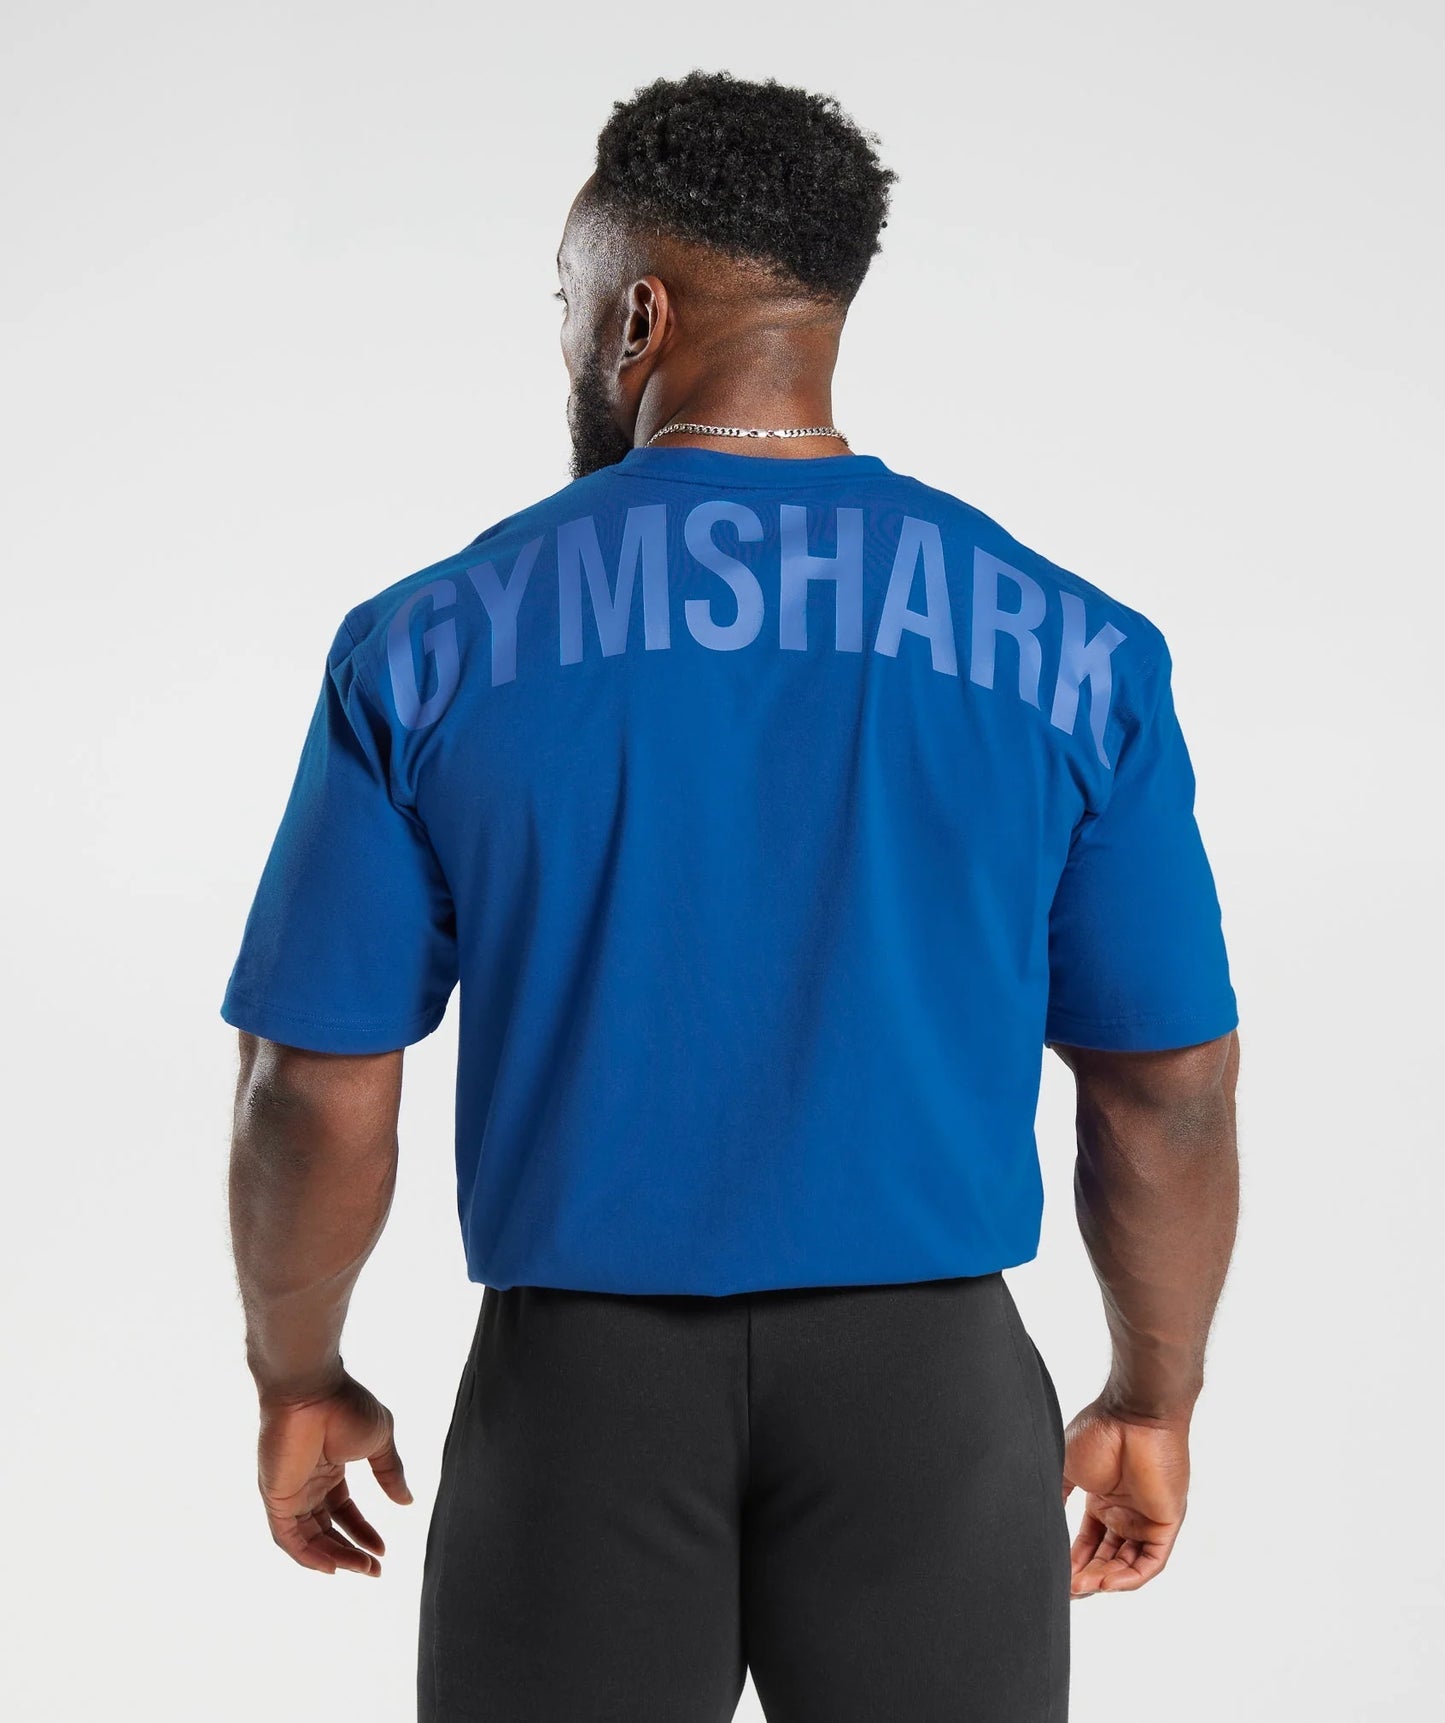 Gymshark Power T-Shirt 23